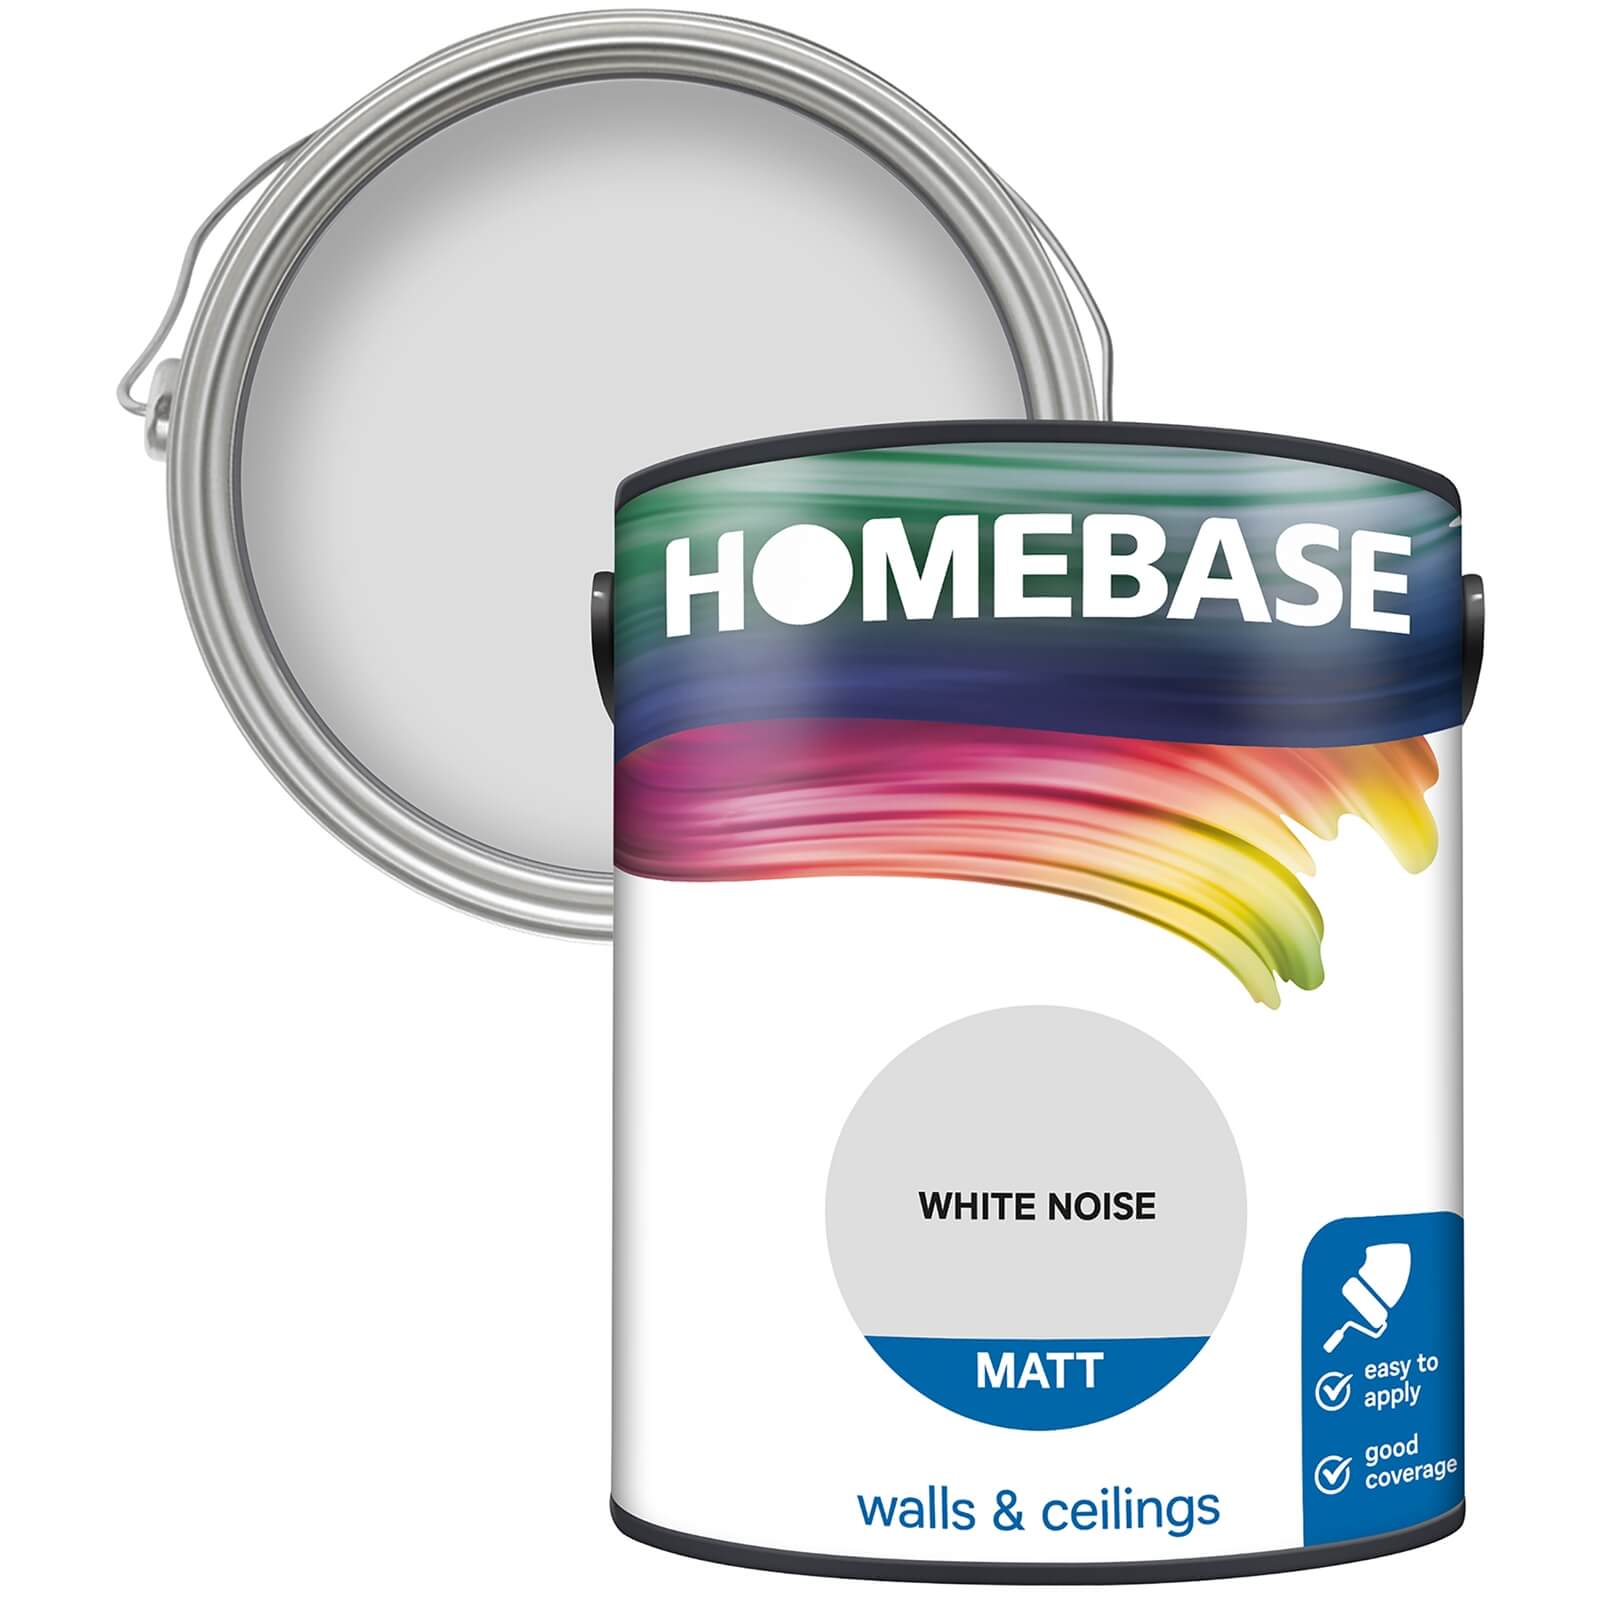 Homebase Matt Emulsion Paint White Noise - 5L